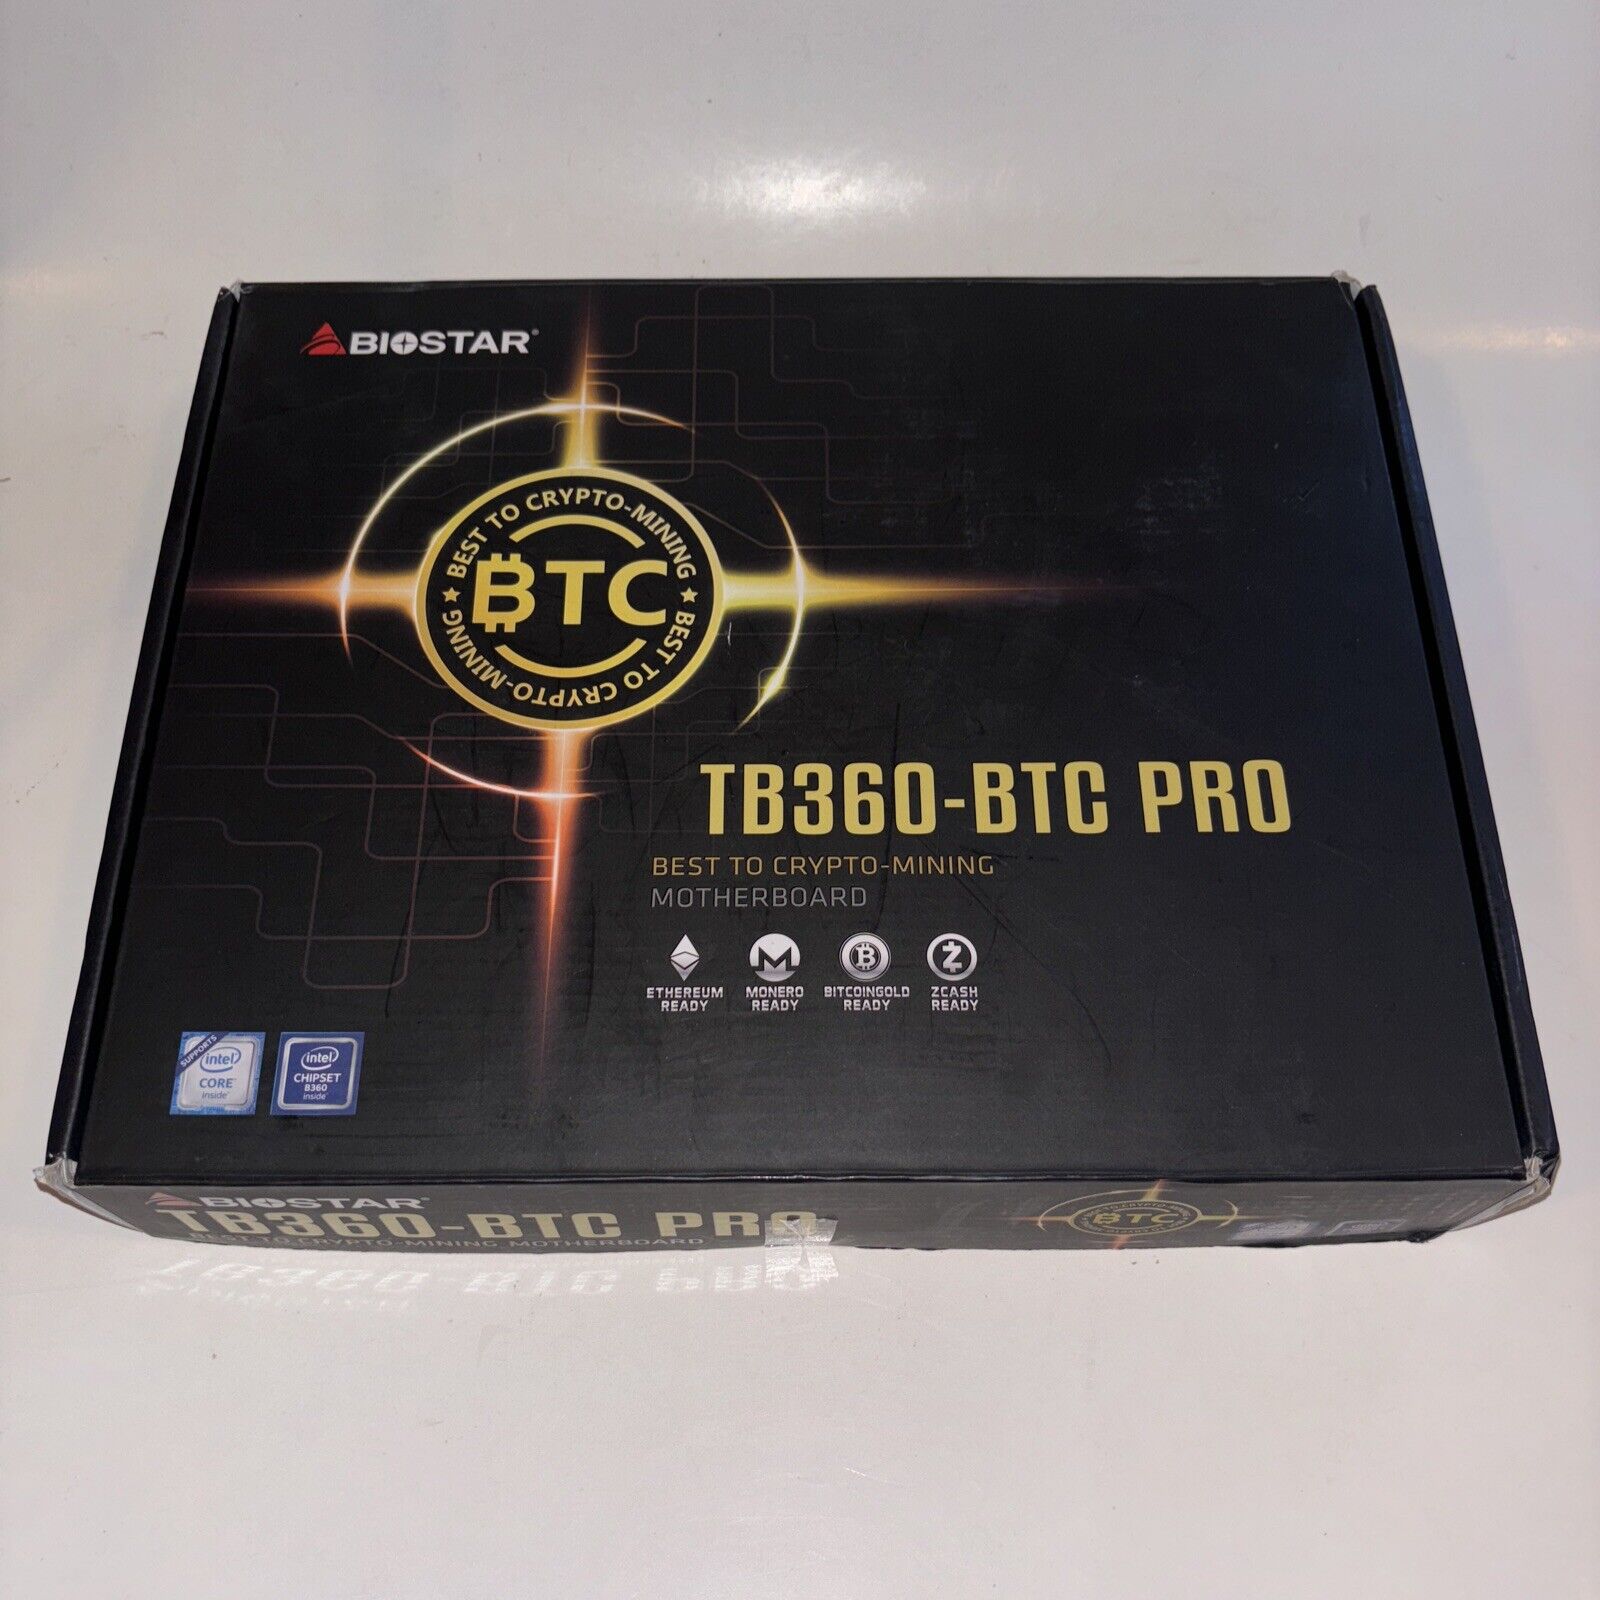 BIOSTAR TB360-BTC PRO Motherboard BENT SOCKET PIN